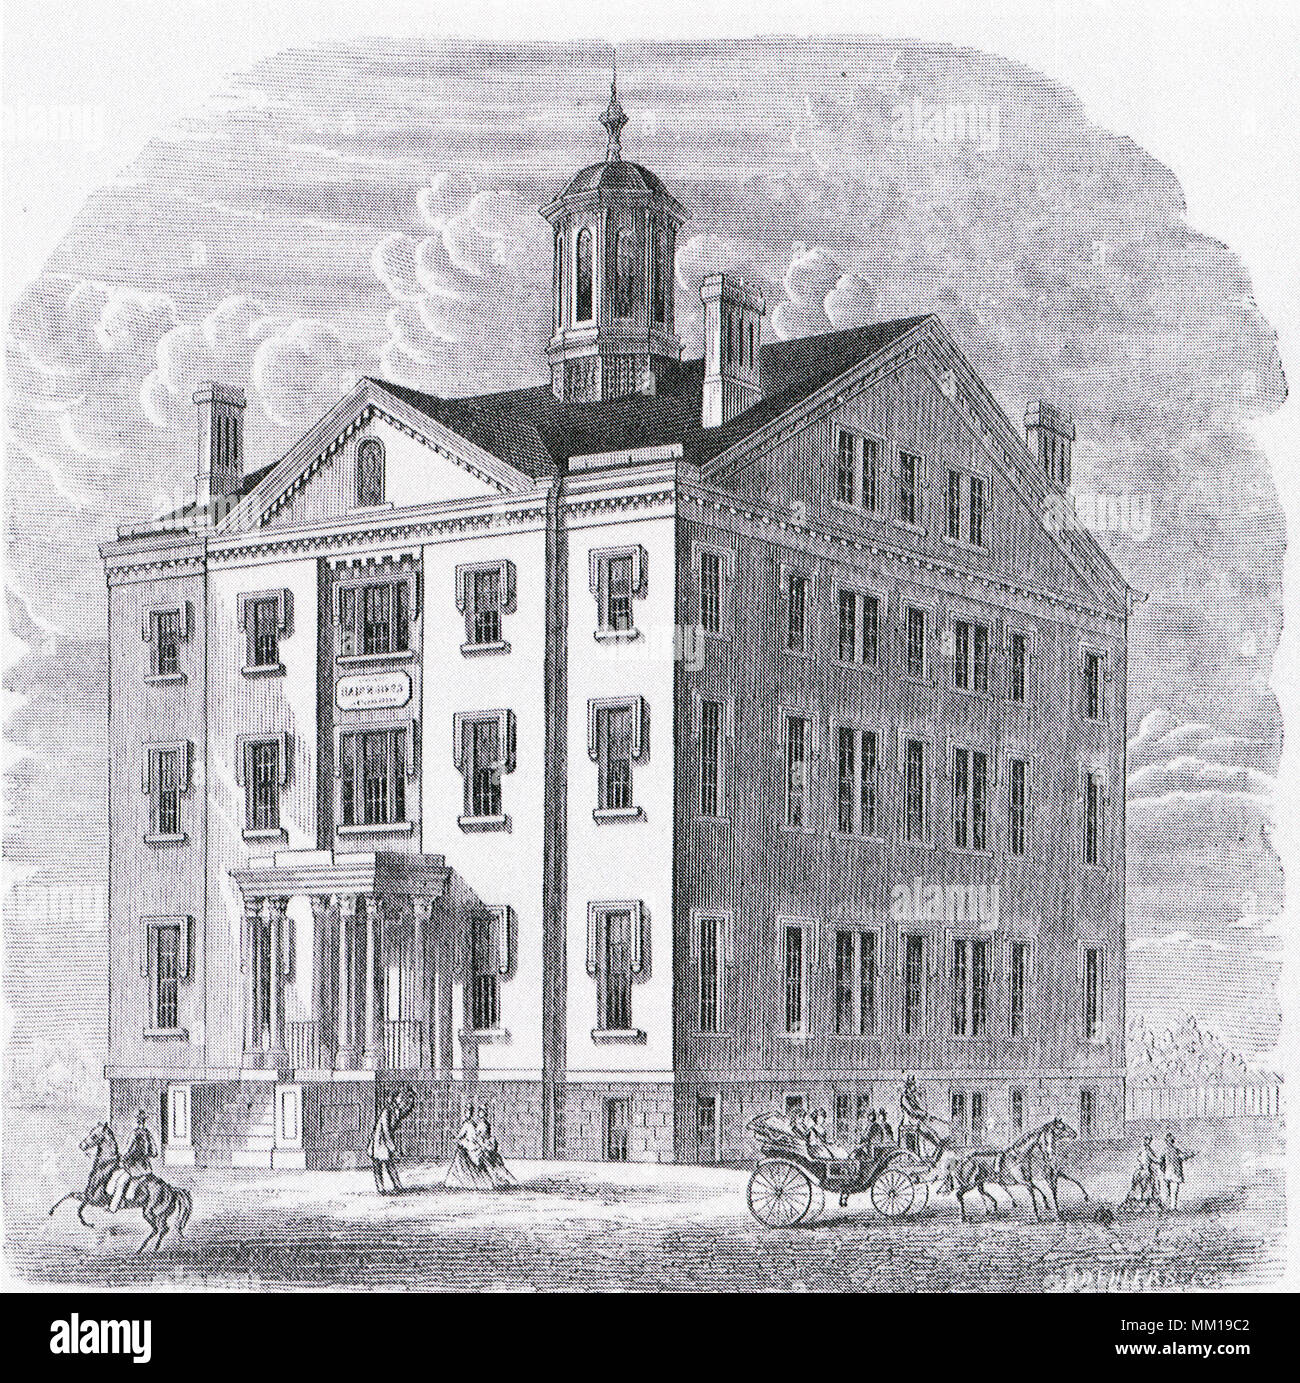 L'hôpital en hébreu. Baltimore. 1850 Banque D'Images